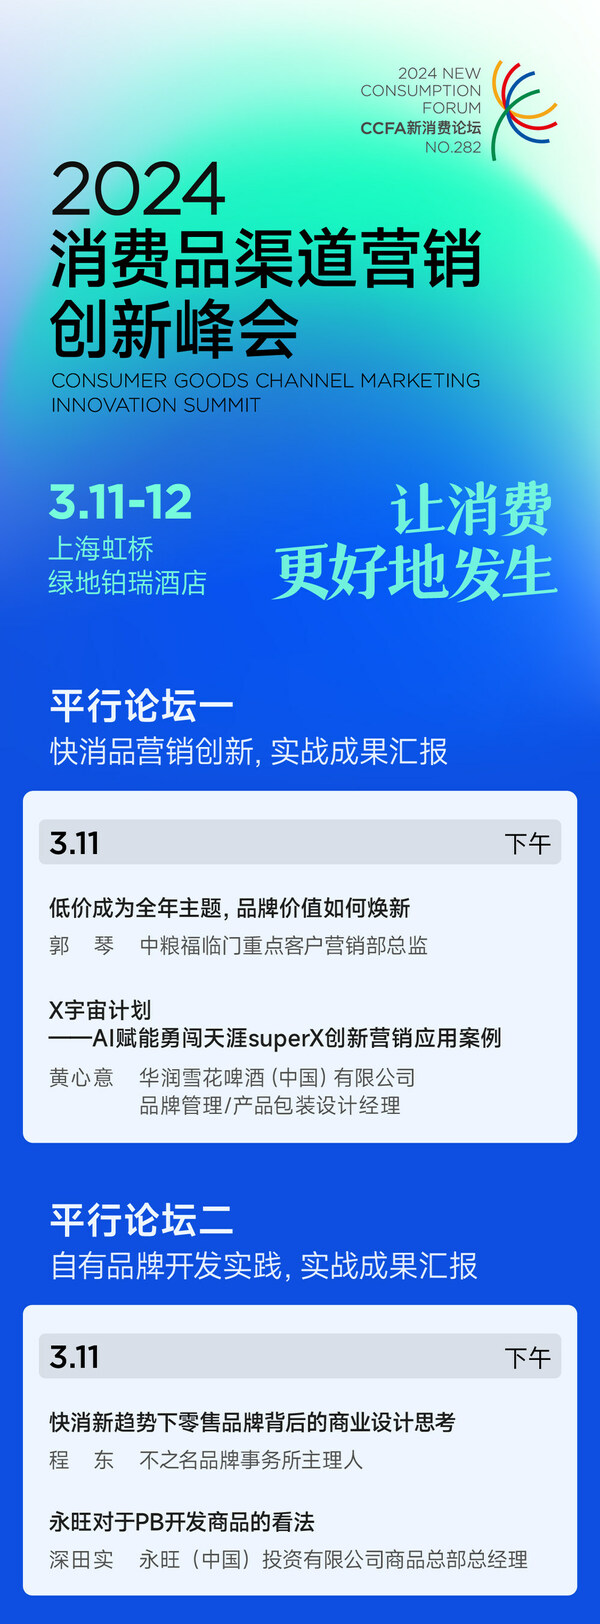 日程公布 消费品渠道营销创新峰会3月11-12日上海召开图1